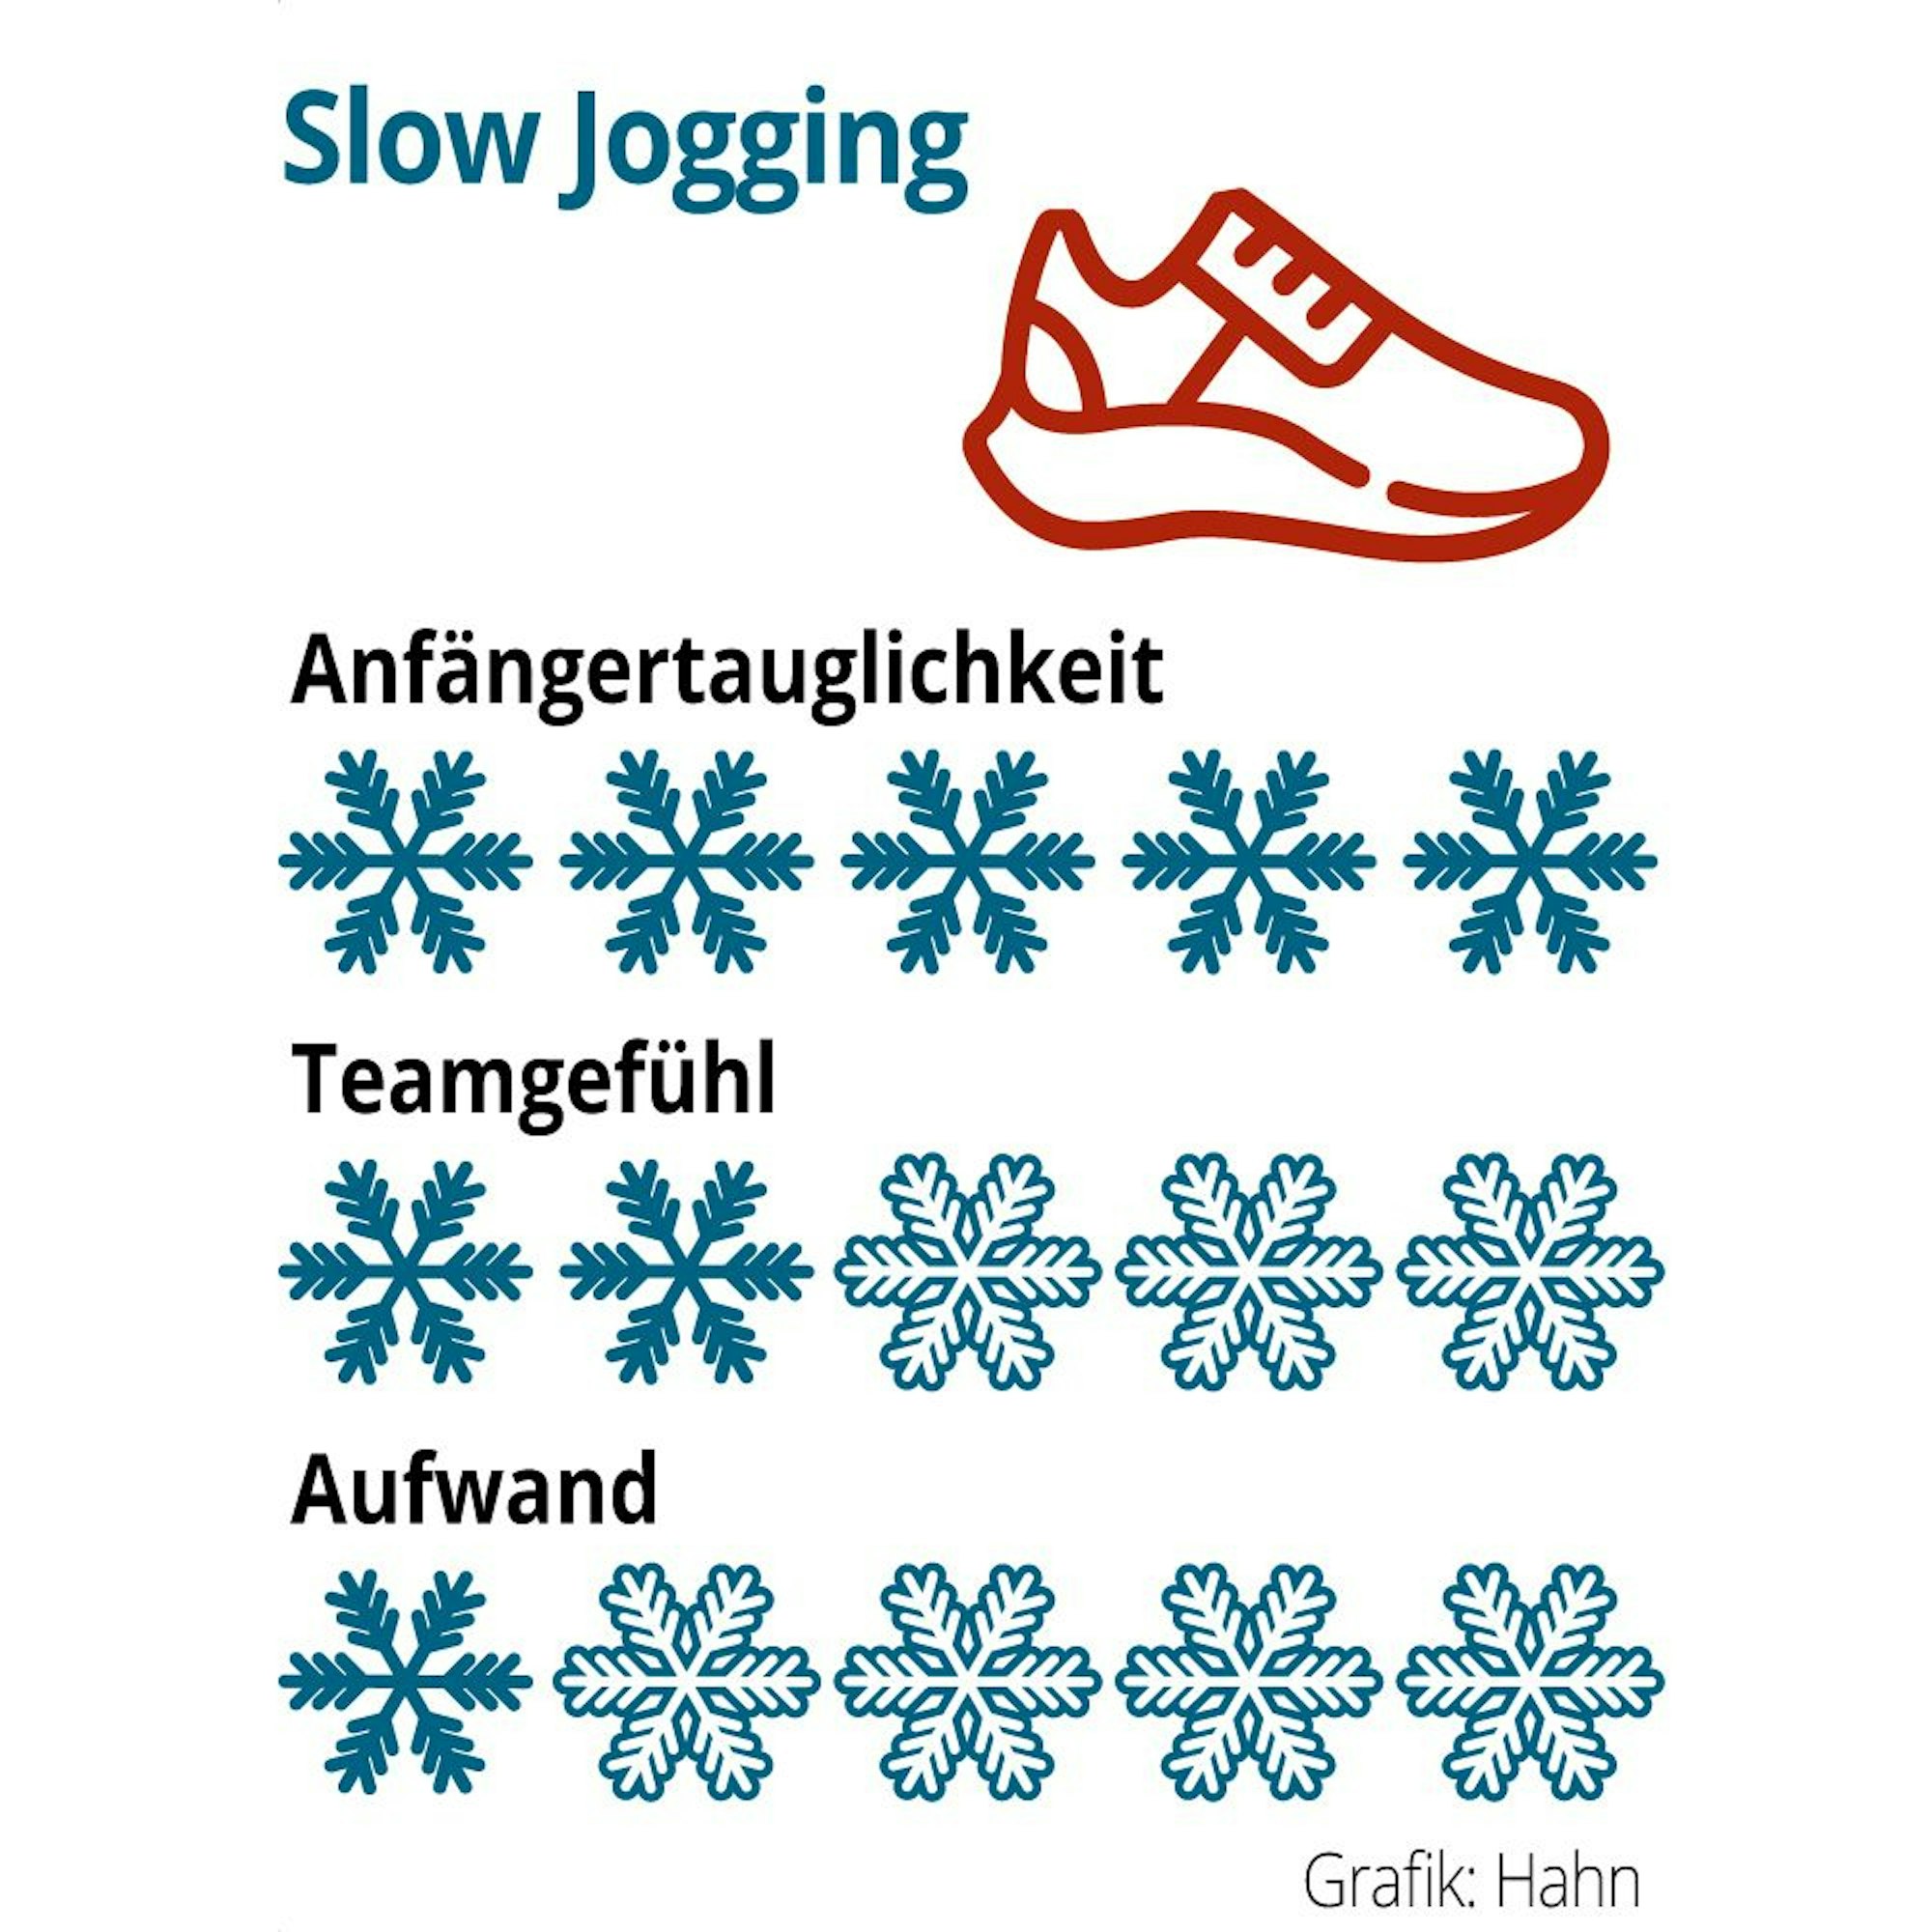 Die Bewertung für Slow Jogging: Anfängertauglichkeit 5 von 5 Schneeflocken, Teamgefühl 2 von 5 Schneeflocken und der Aufwand beträgt 1 von 5 Schneeflocken.